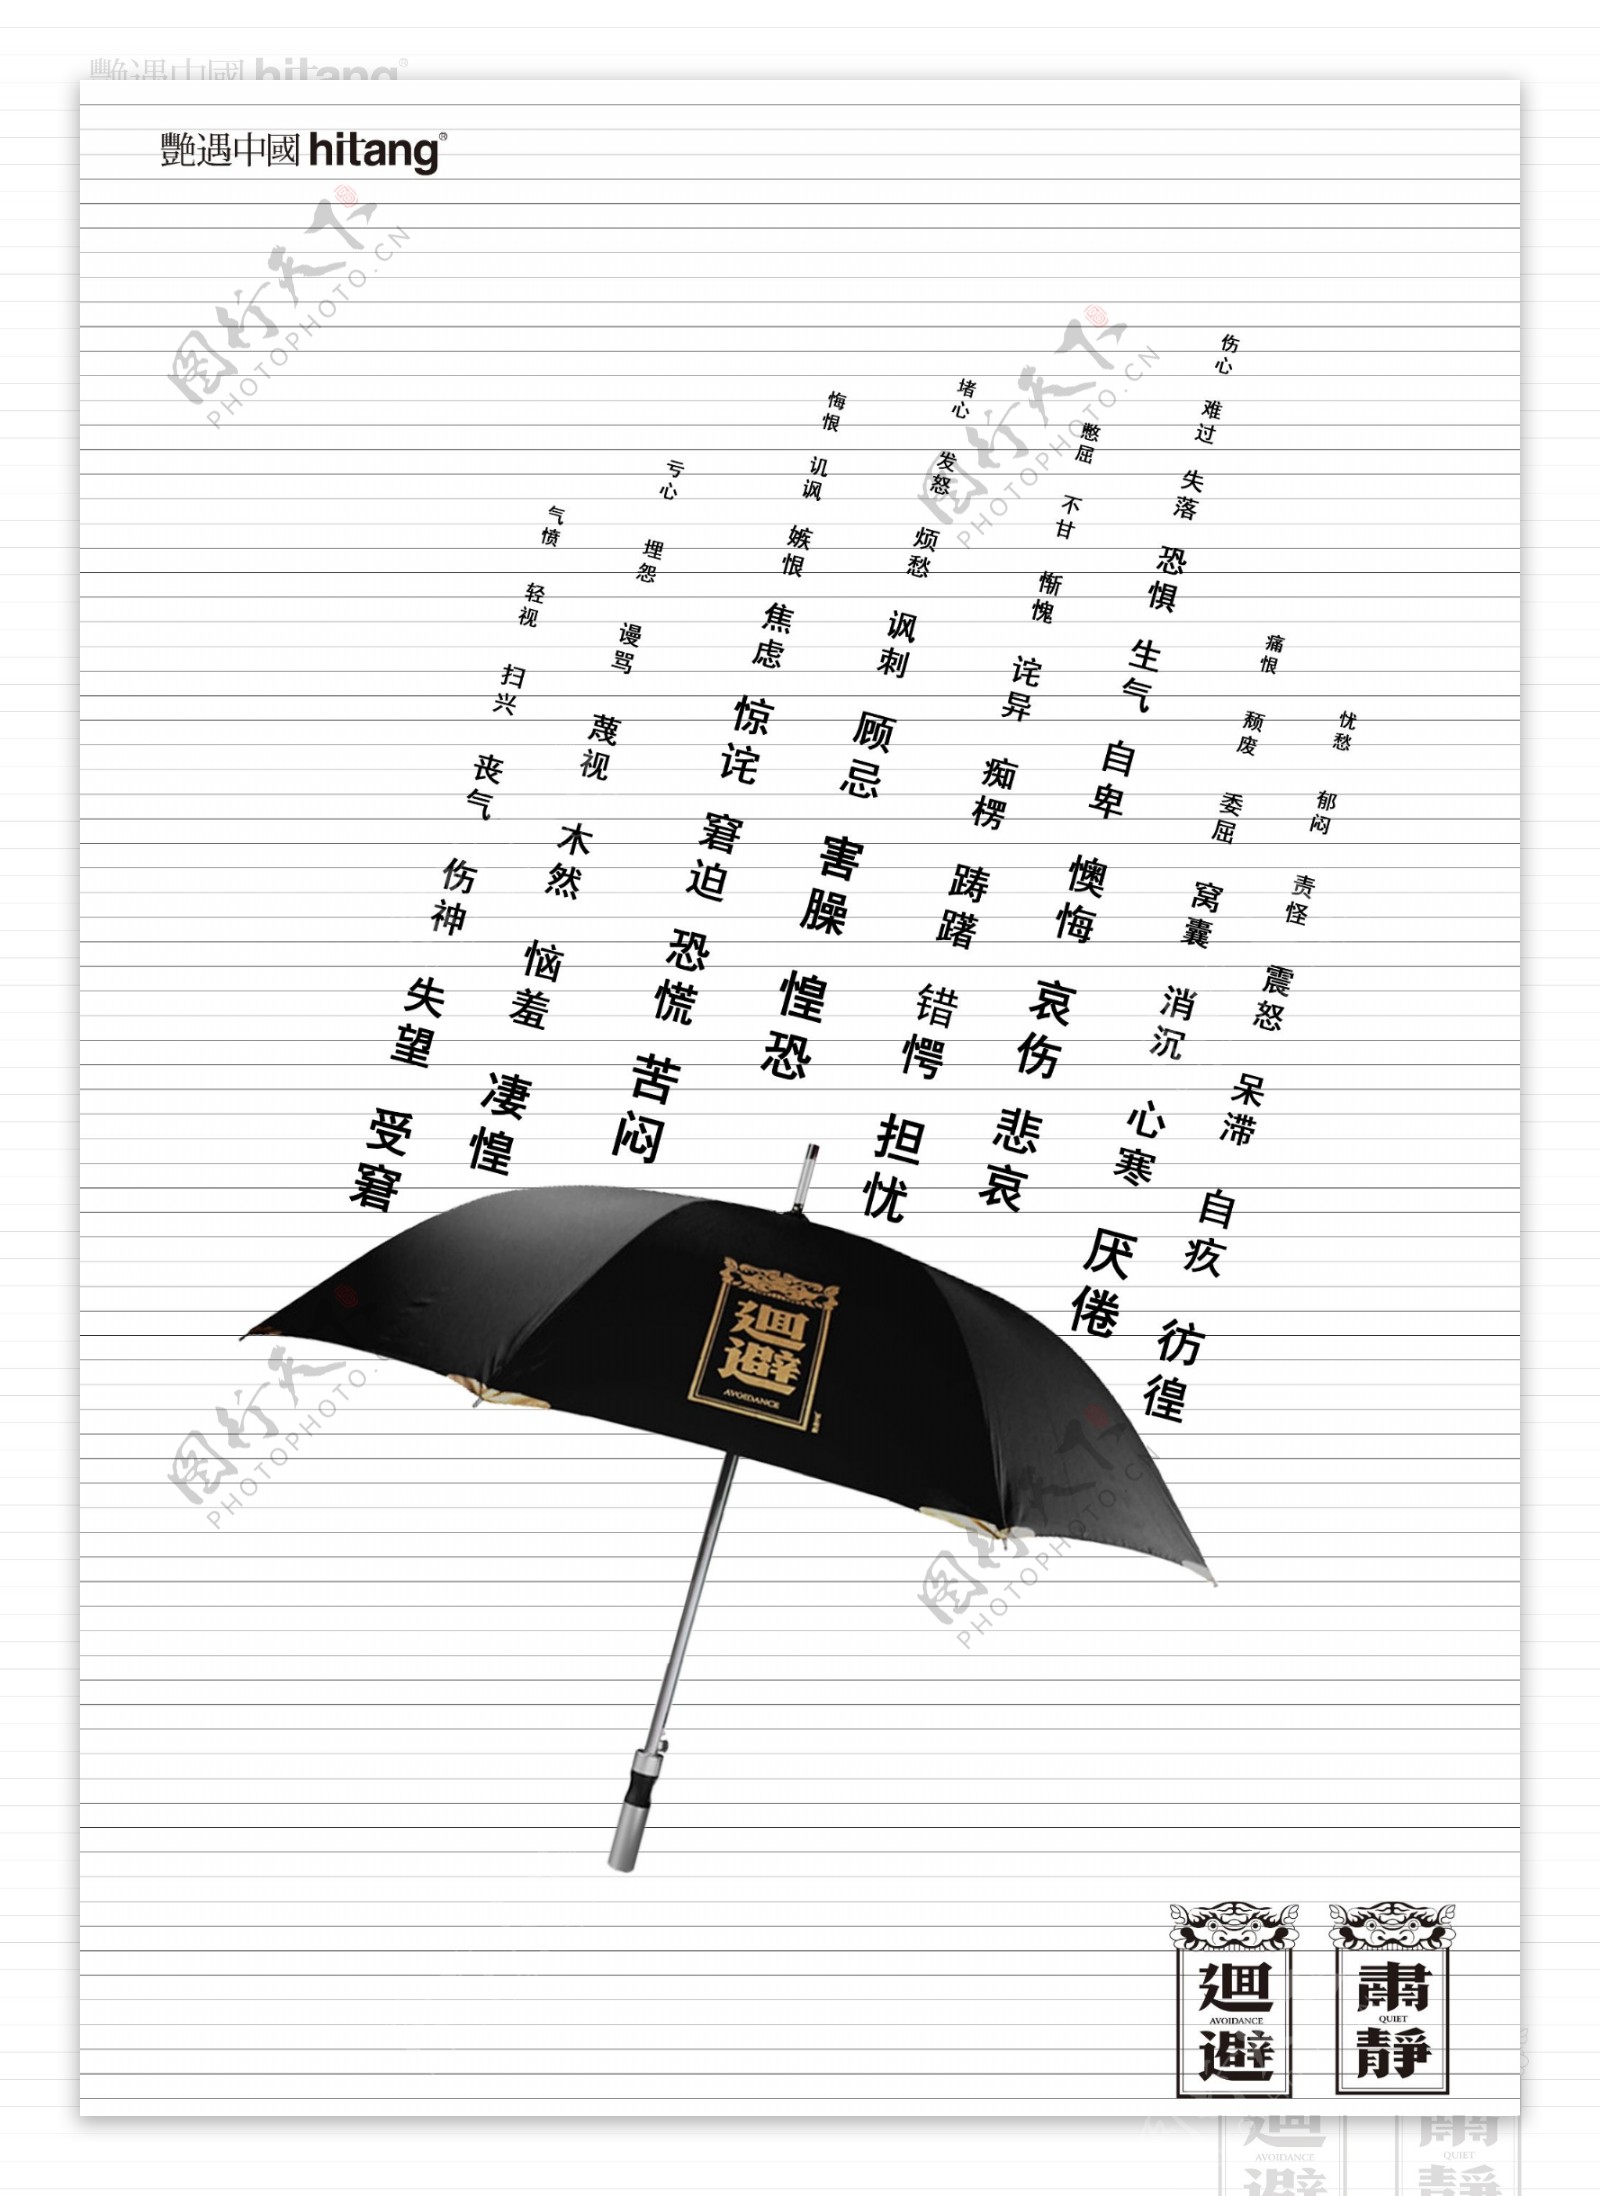 回避伞广告设计图片